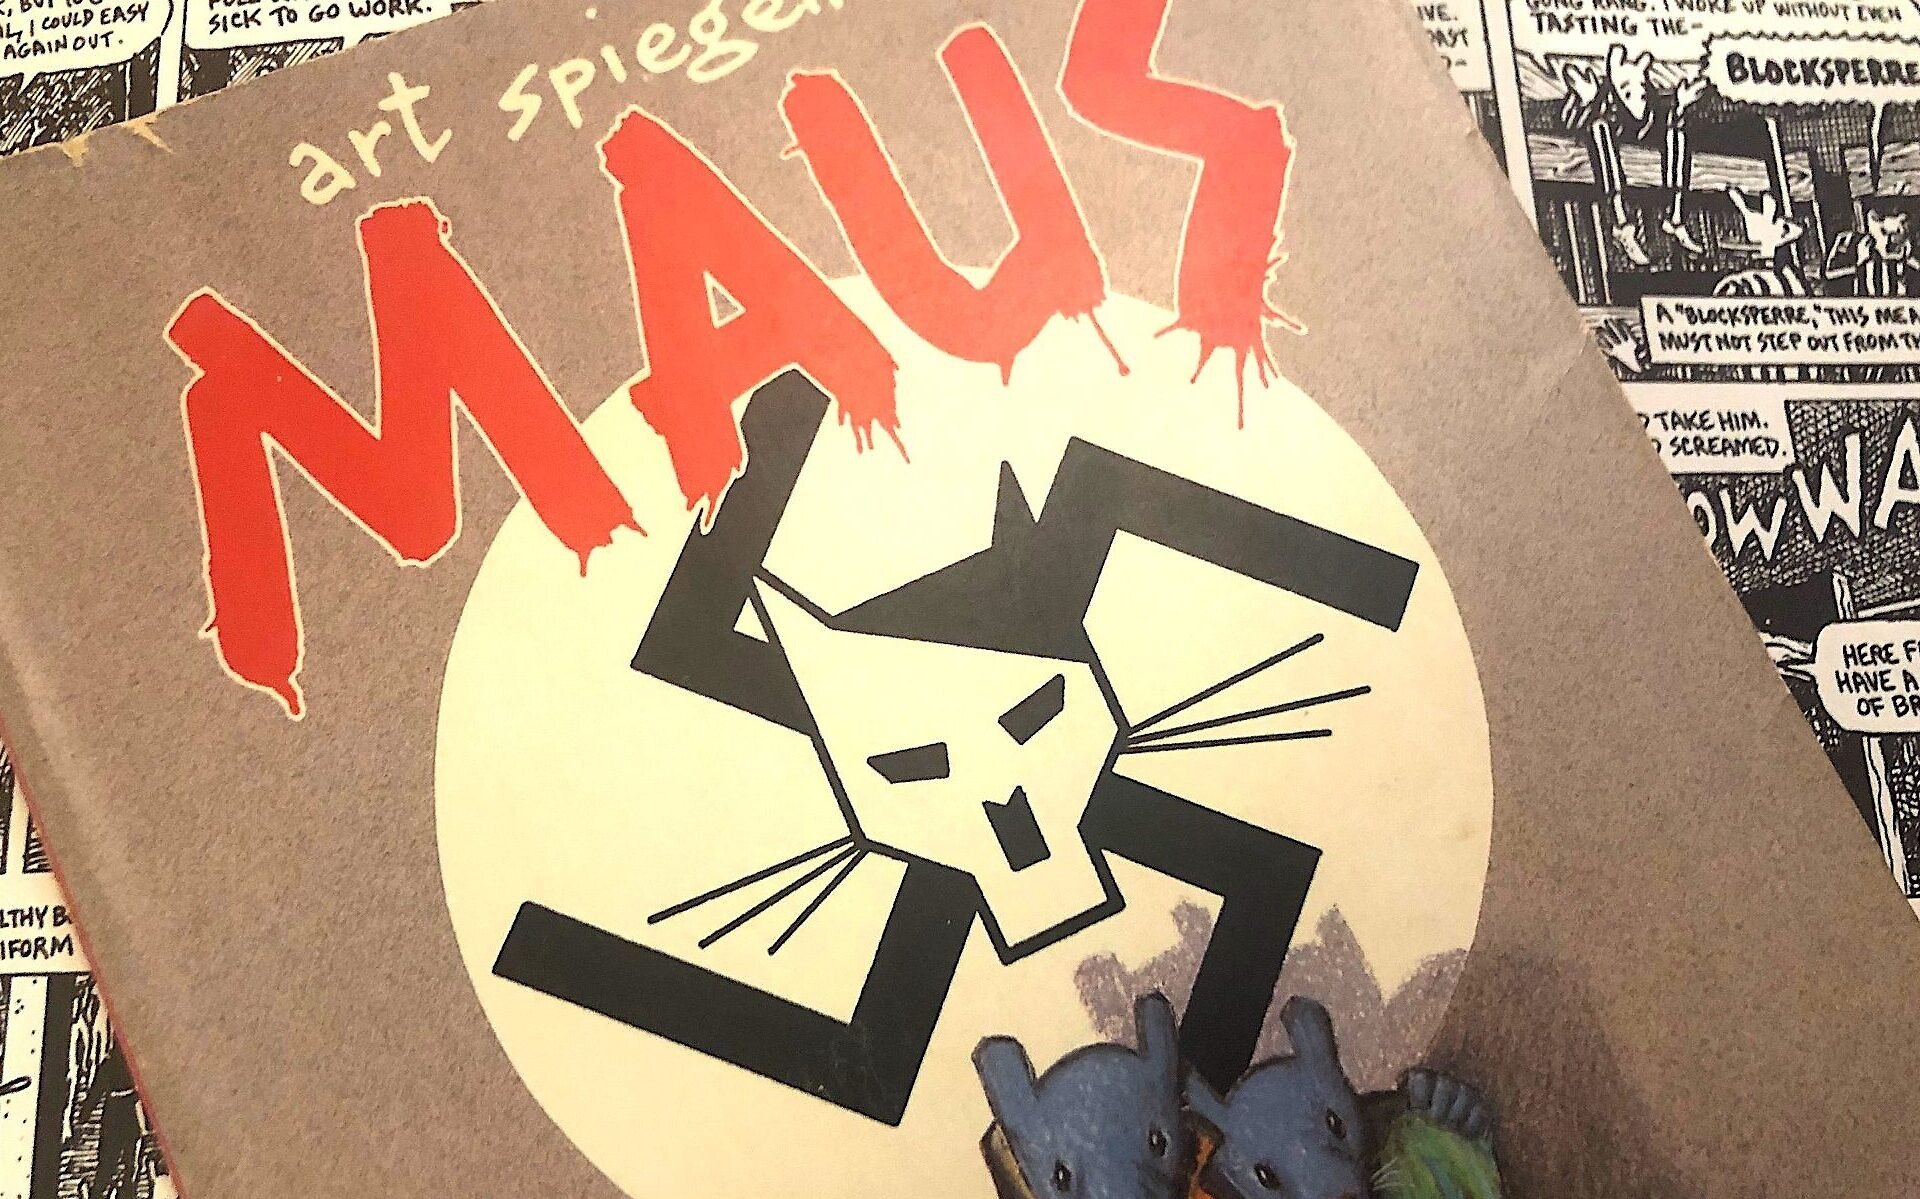  Un district conservator din SUA a eliminat din programa şcolară romanul grafic ”Maus”, premiat cu Pulitzer